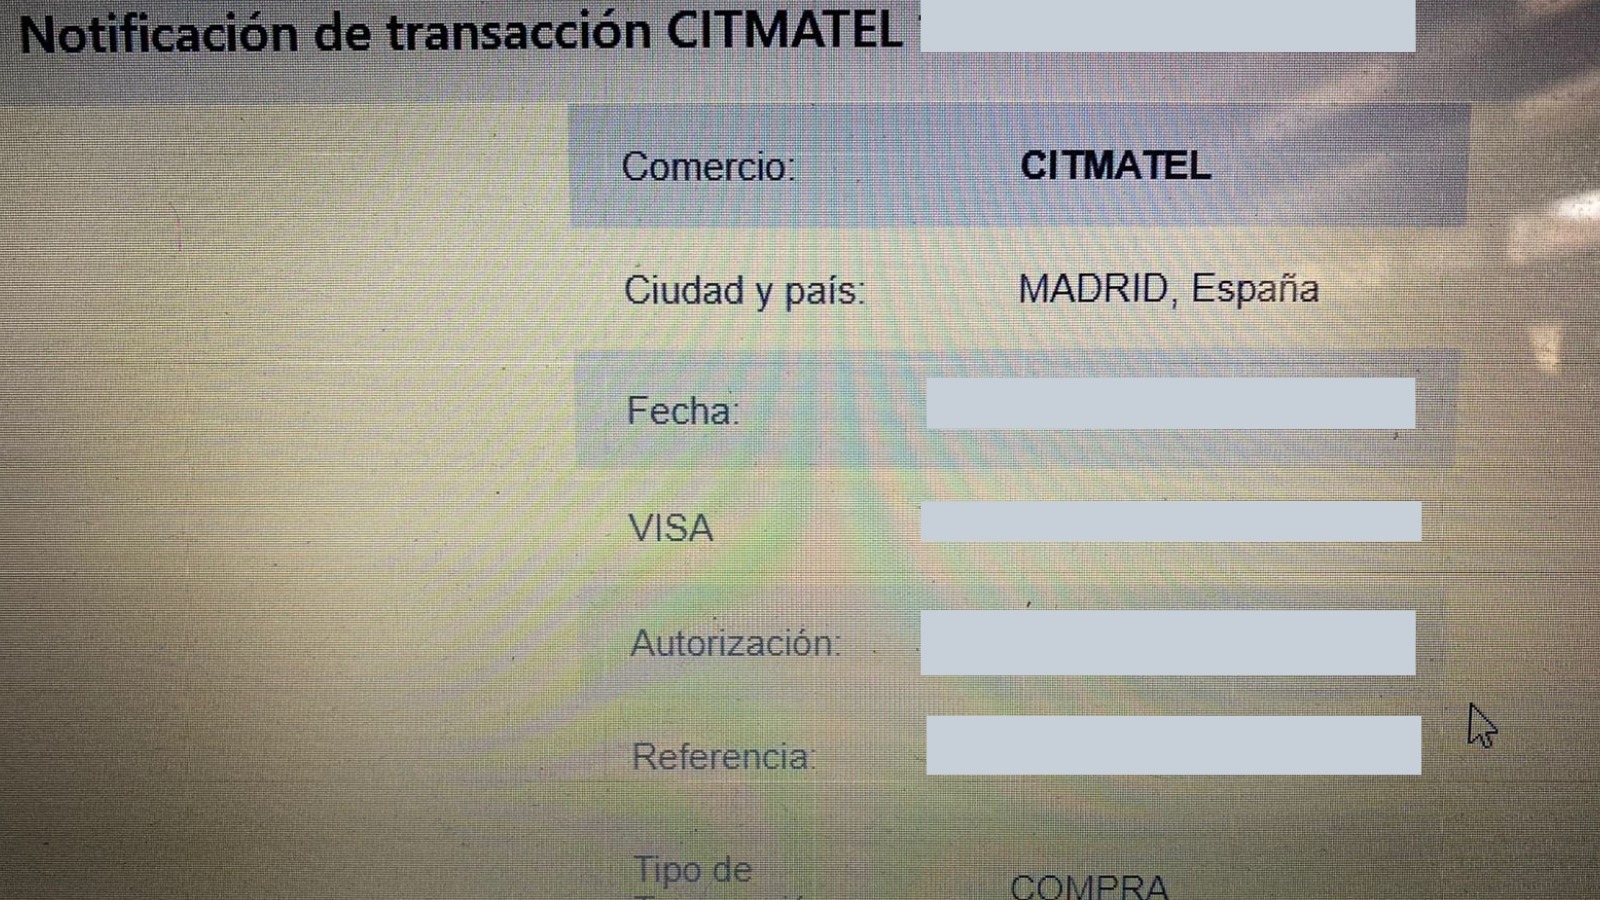 Notificación de transacción en Bazar Regalo. El destinario es Citmatel Madrid.